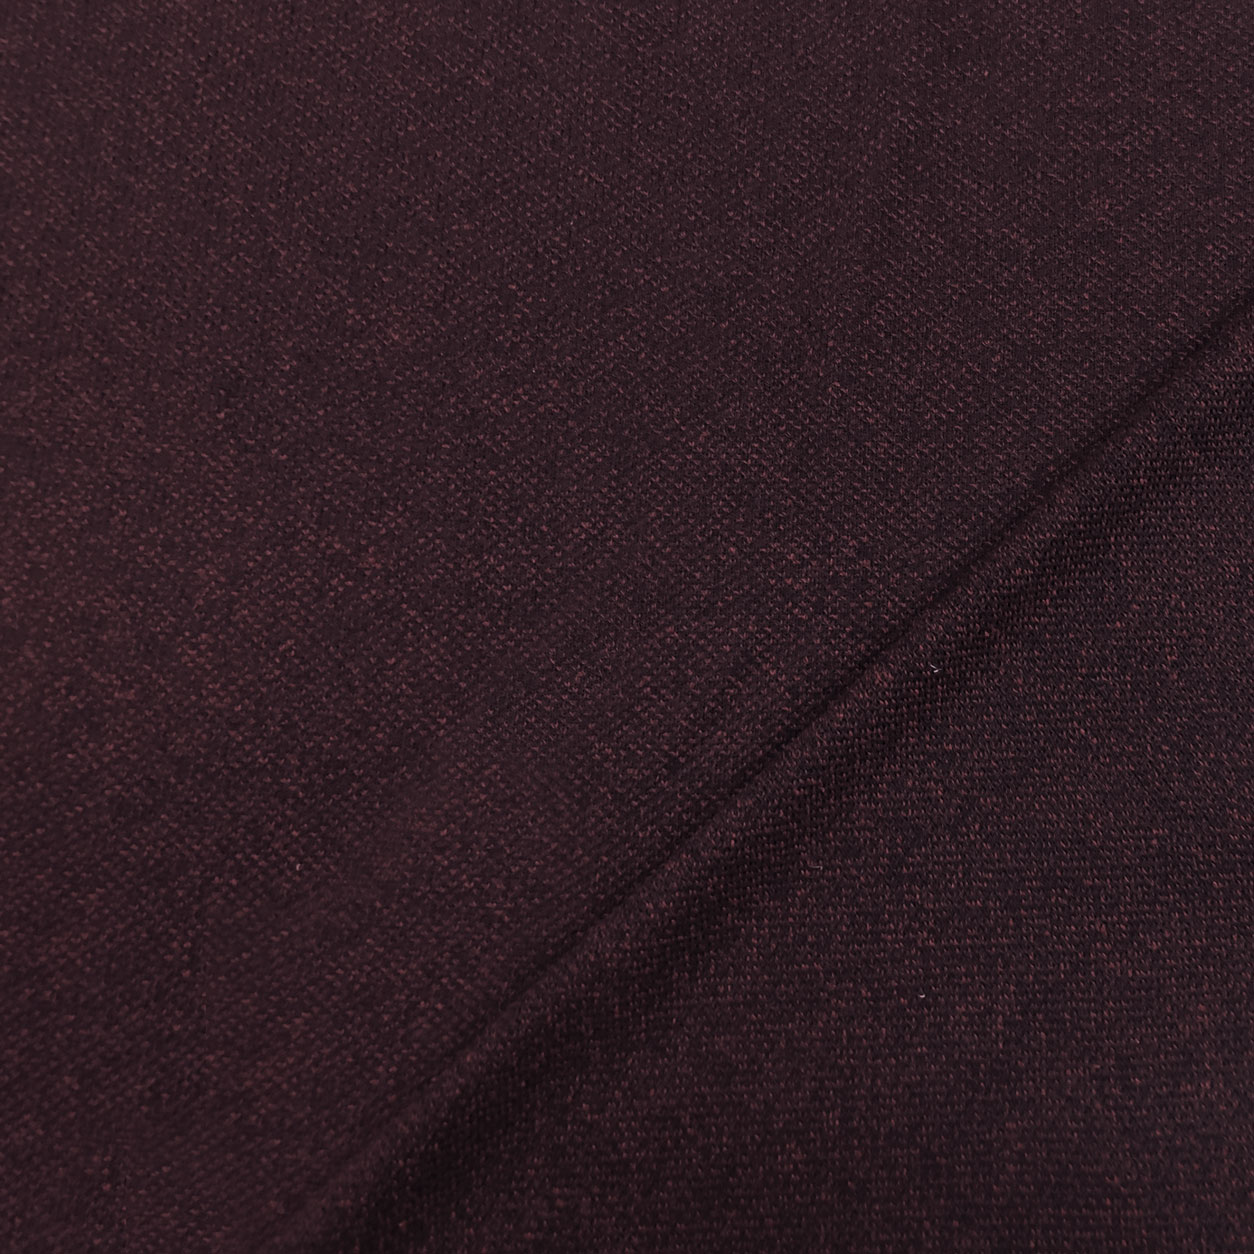 tessuto maglia vinaccia nero melange